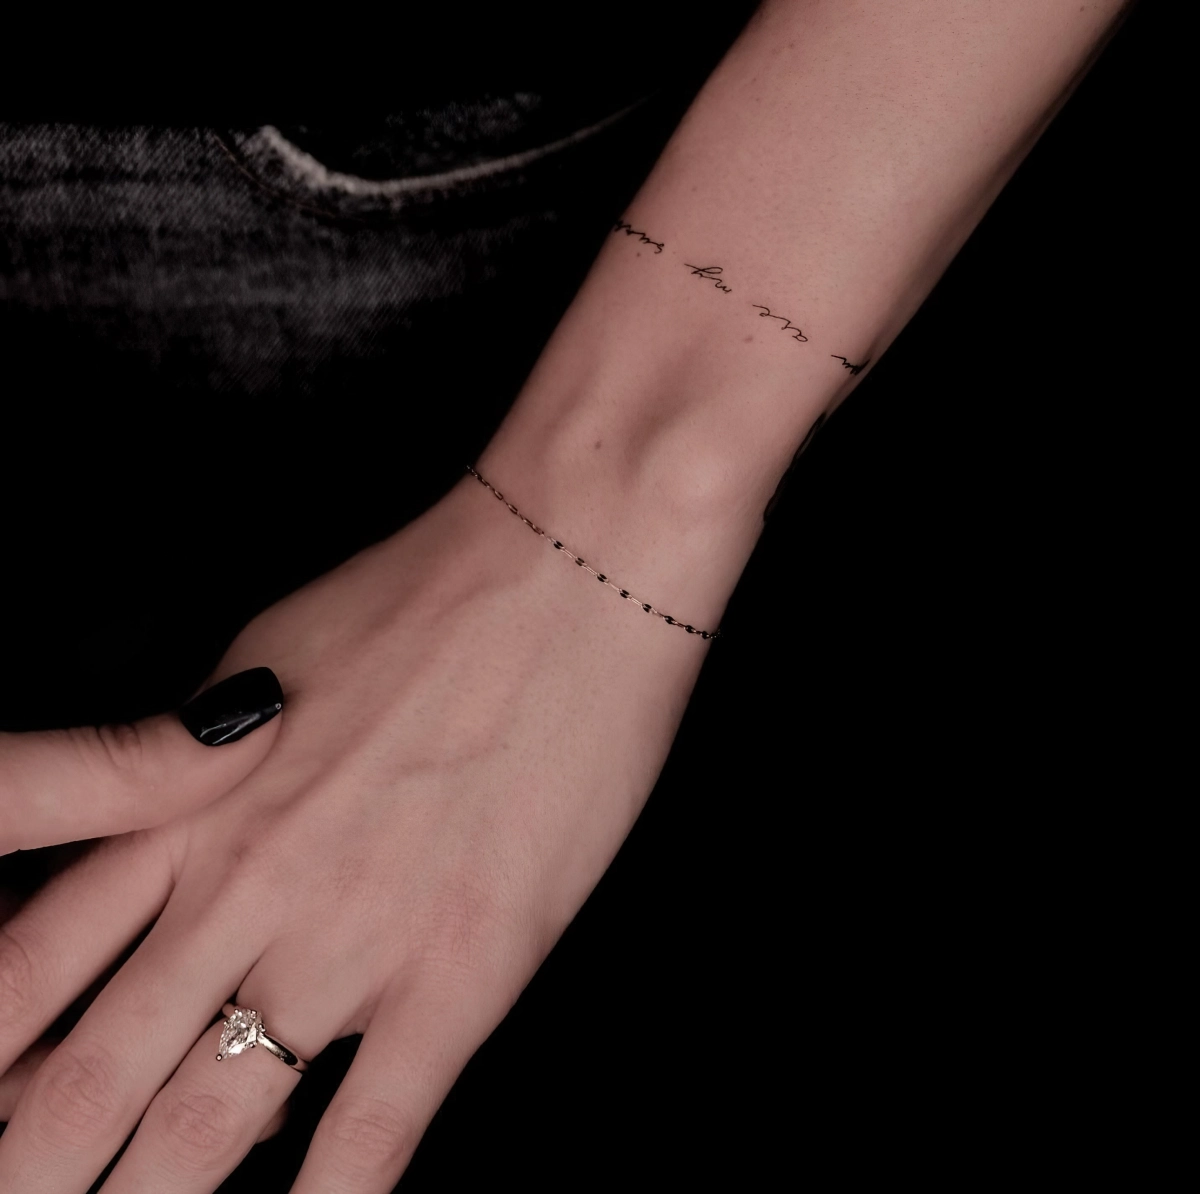 bracelet perles noires tatouage poignet femme bague manucure vernis noir